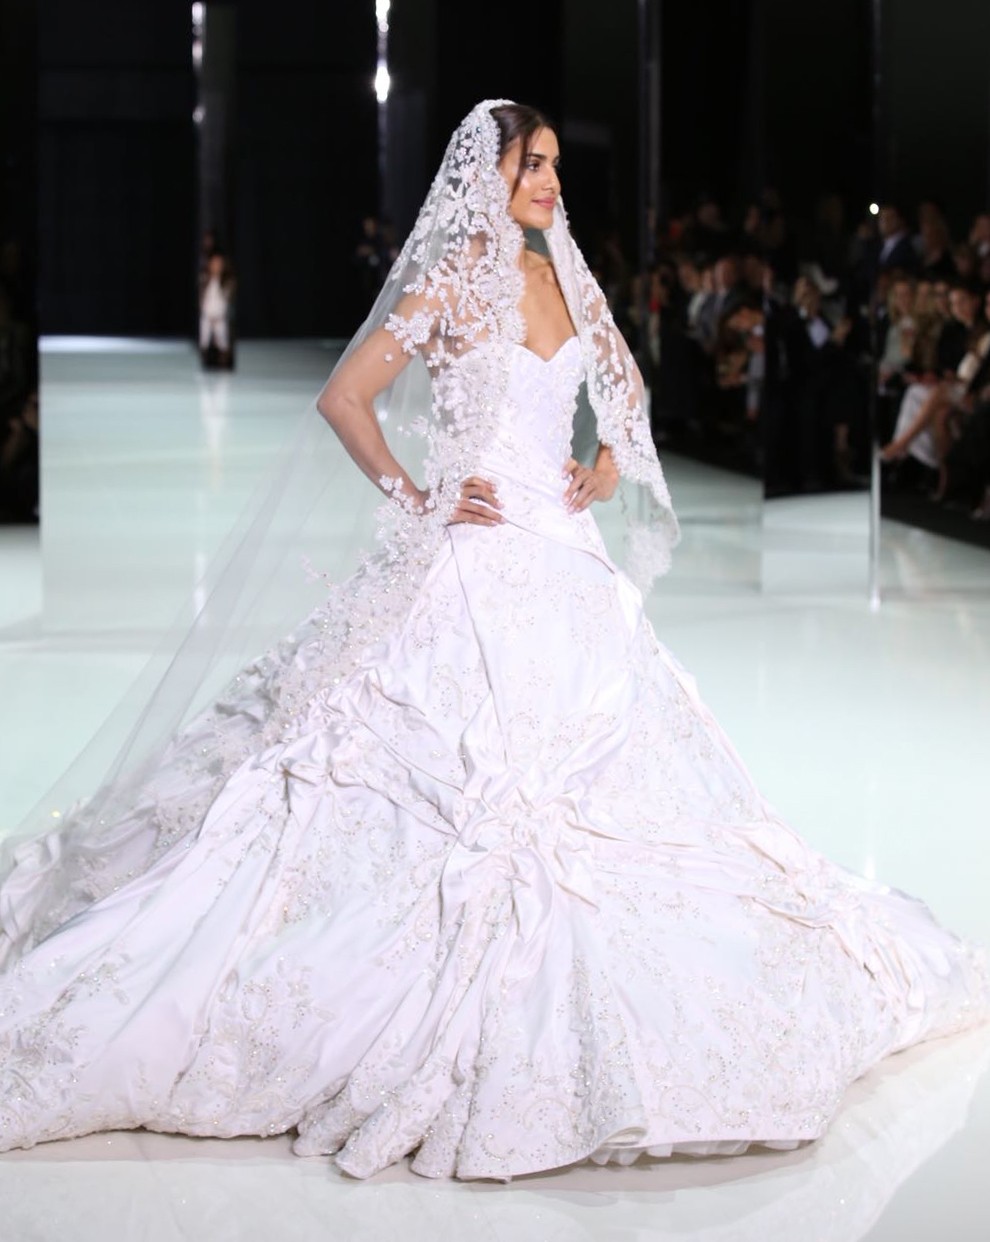 Lá vem a noiva... Camila Coelho brilha na passarela couture da Ralph&Russo (Foto: Reprodução )